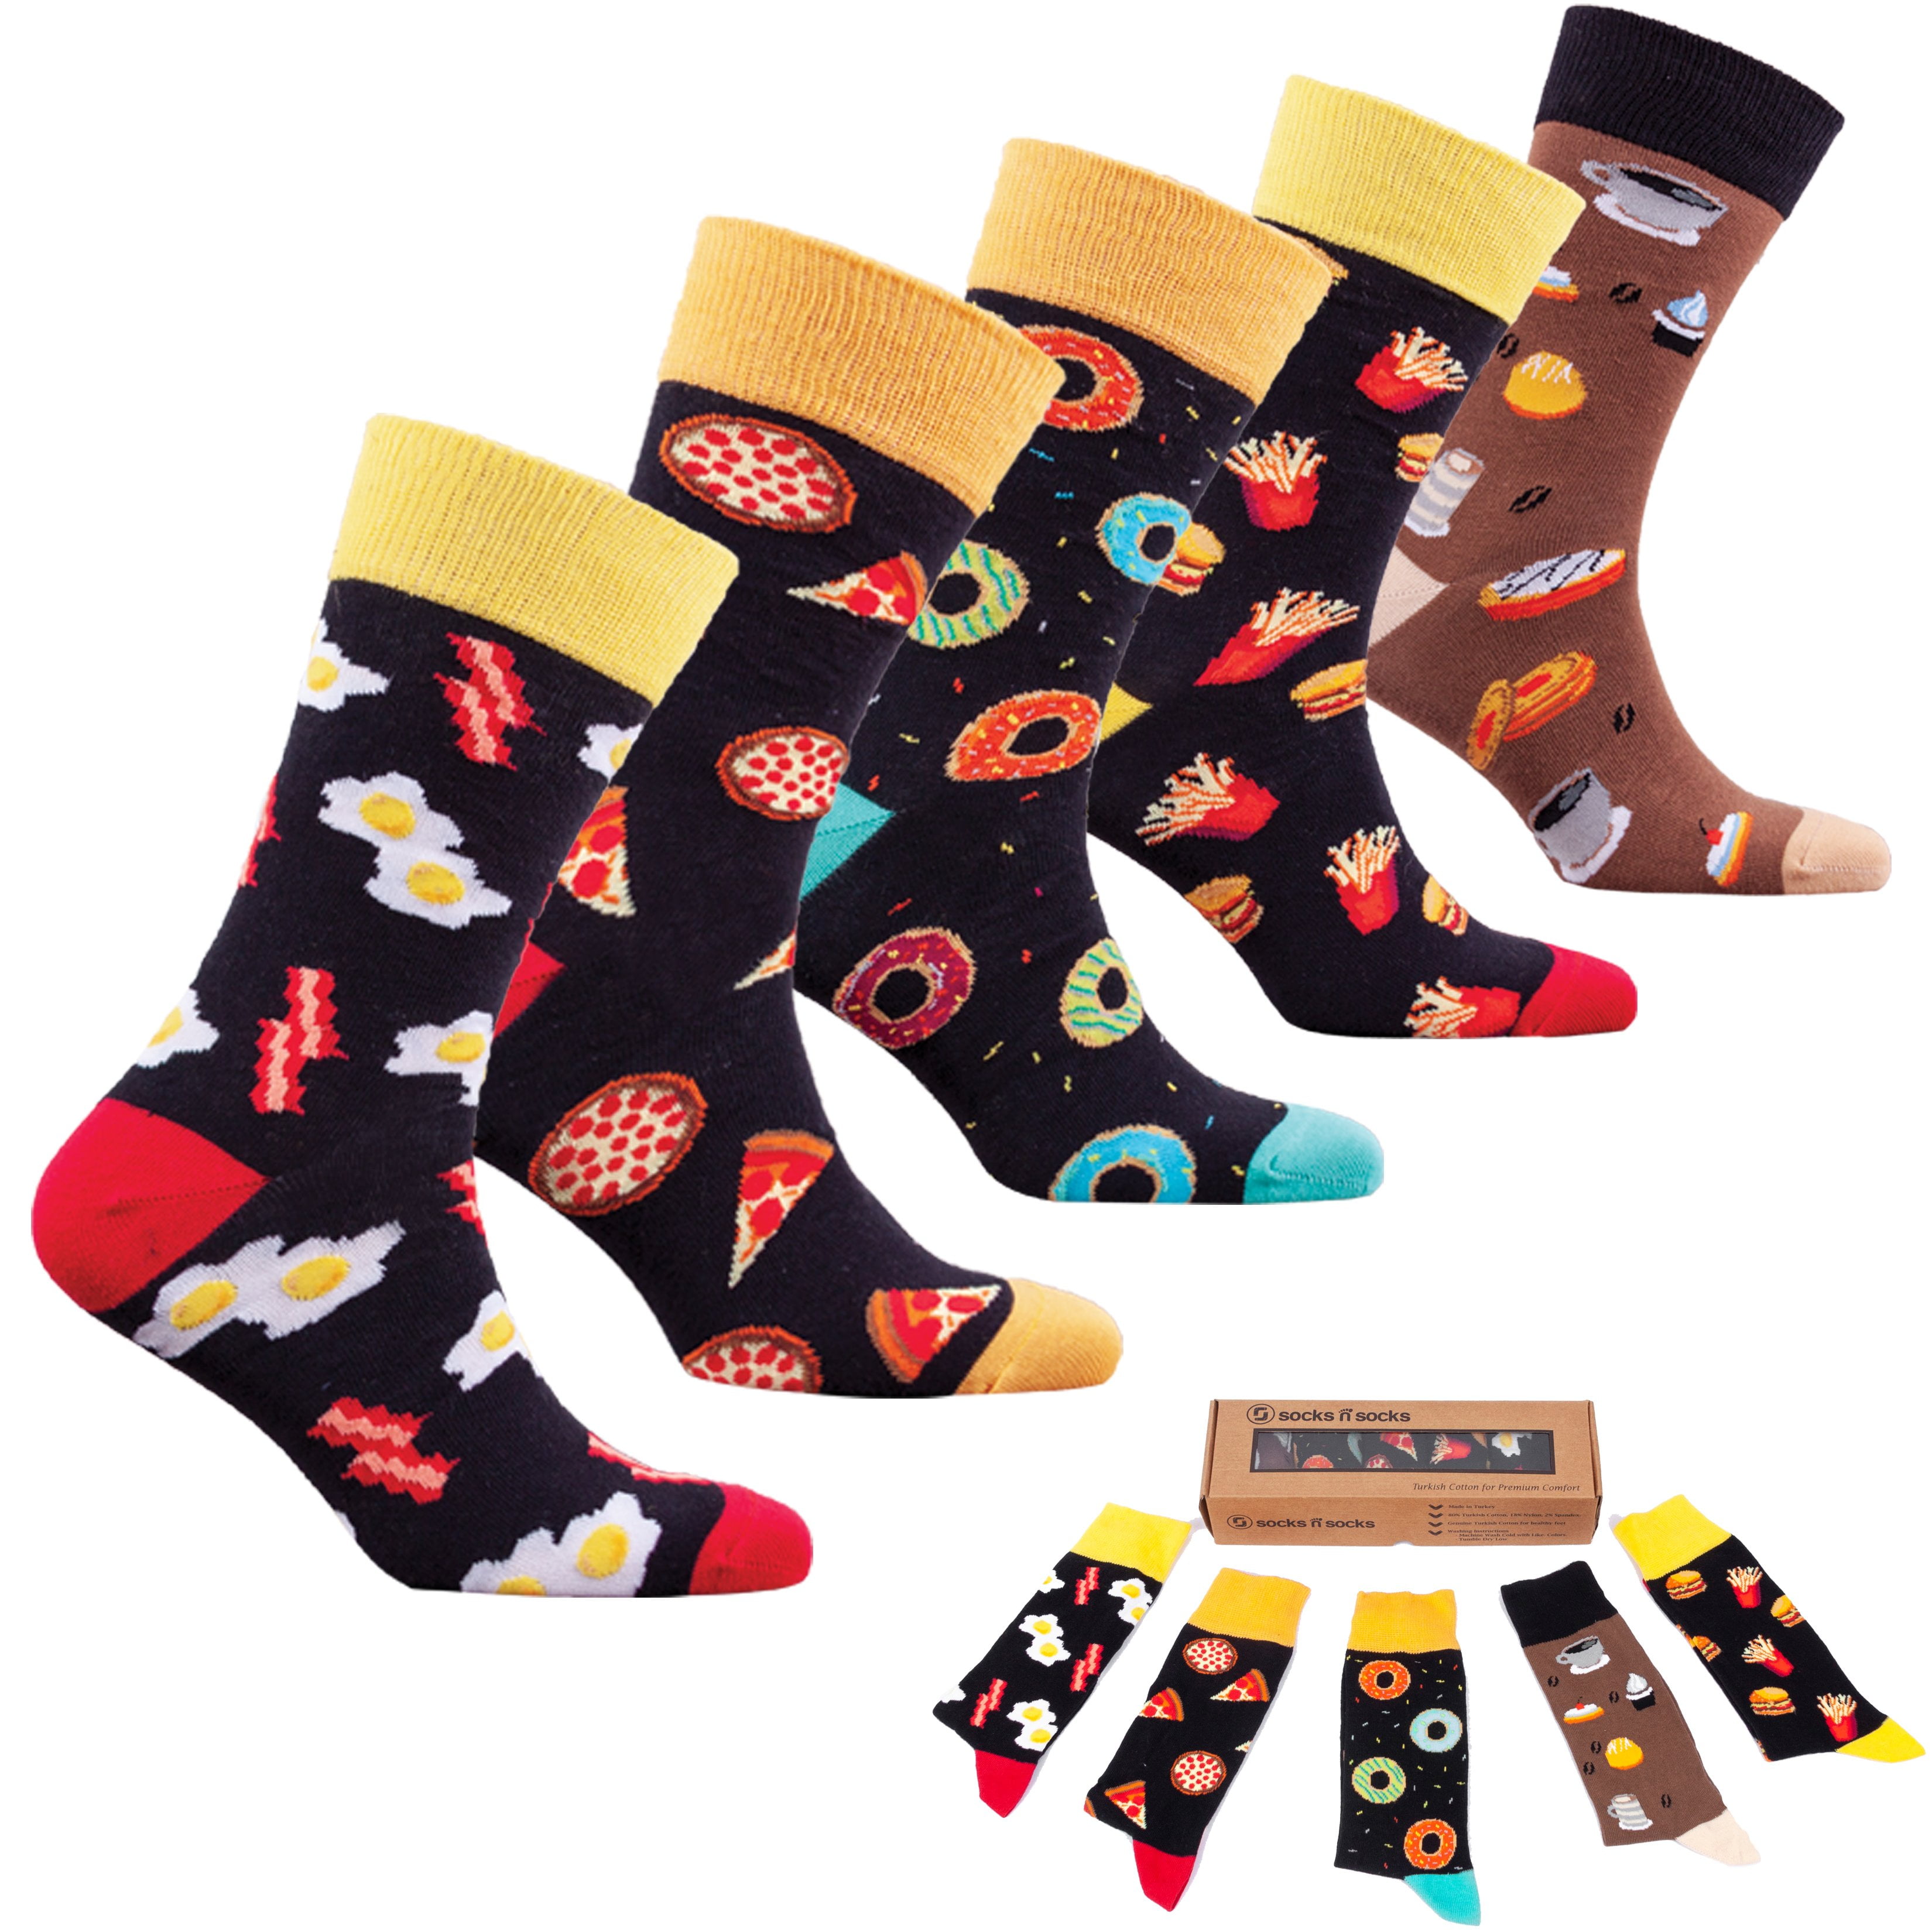 Fast Food Socks - Walmart.com